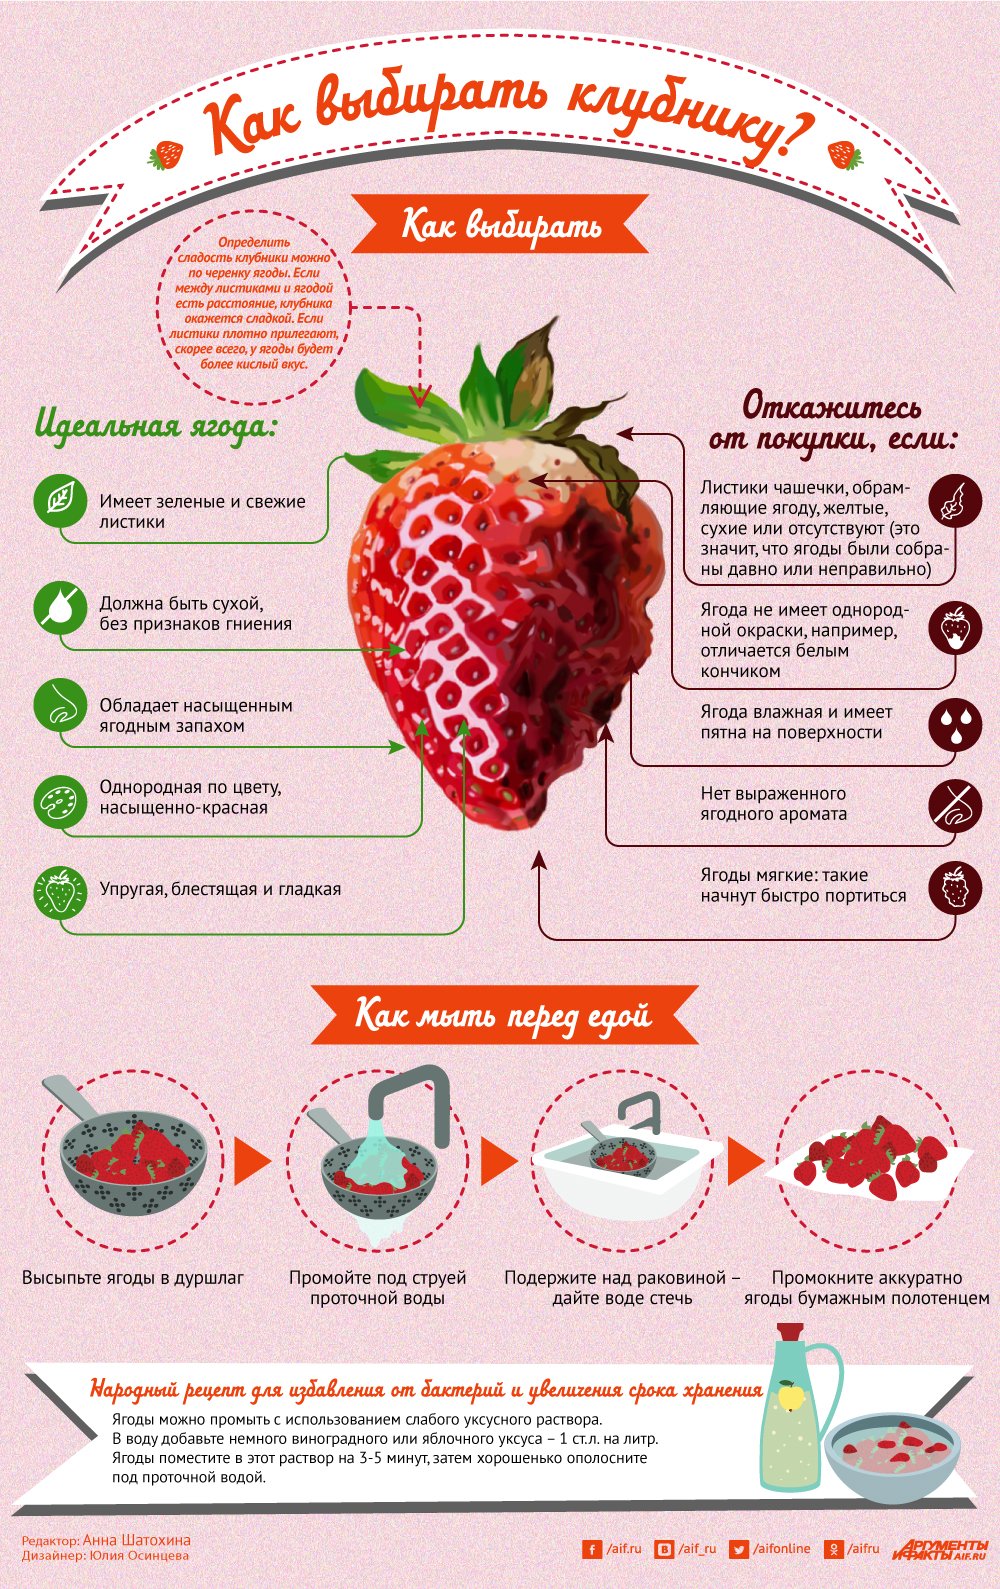 Как определить качество ягод по внешнему виду?